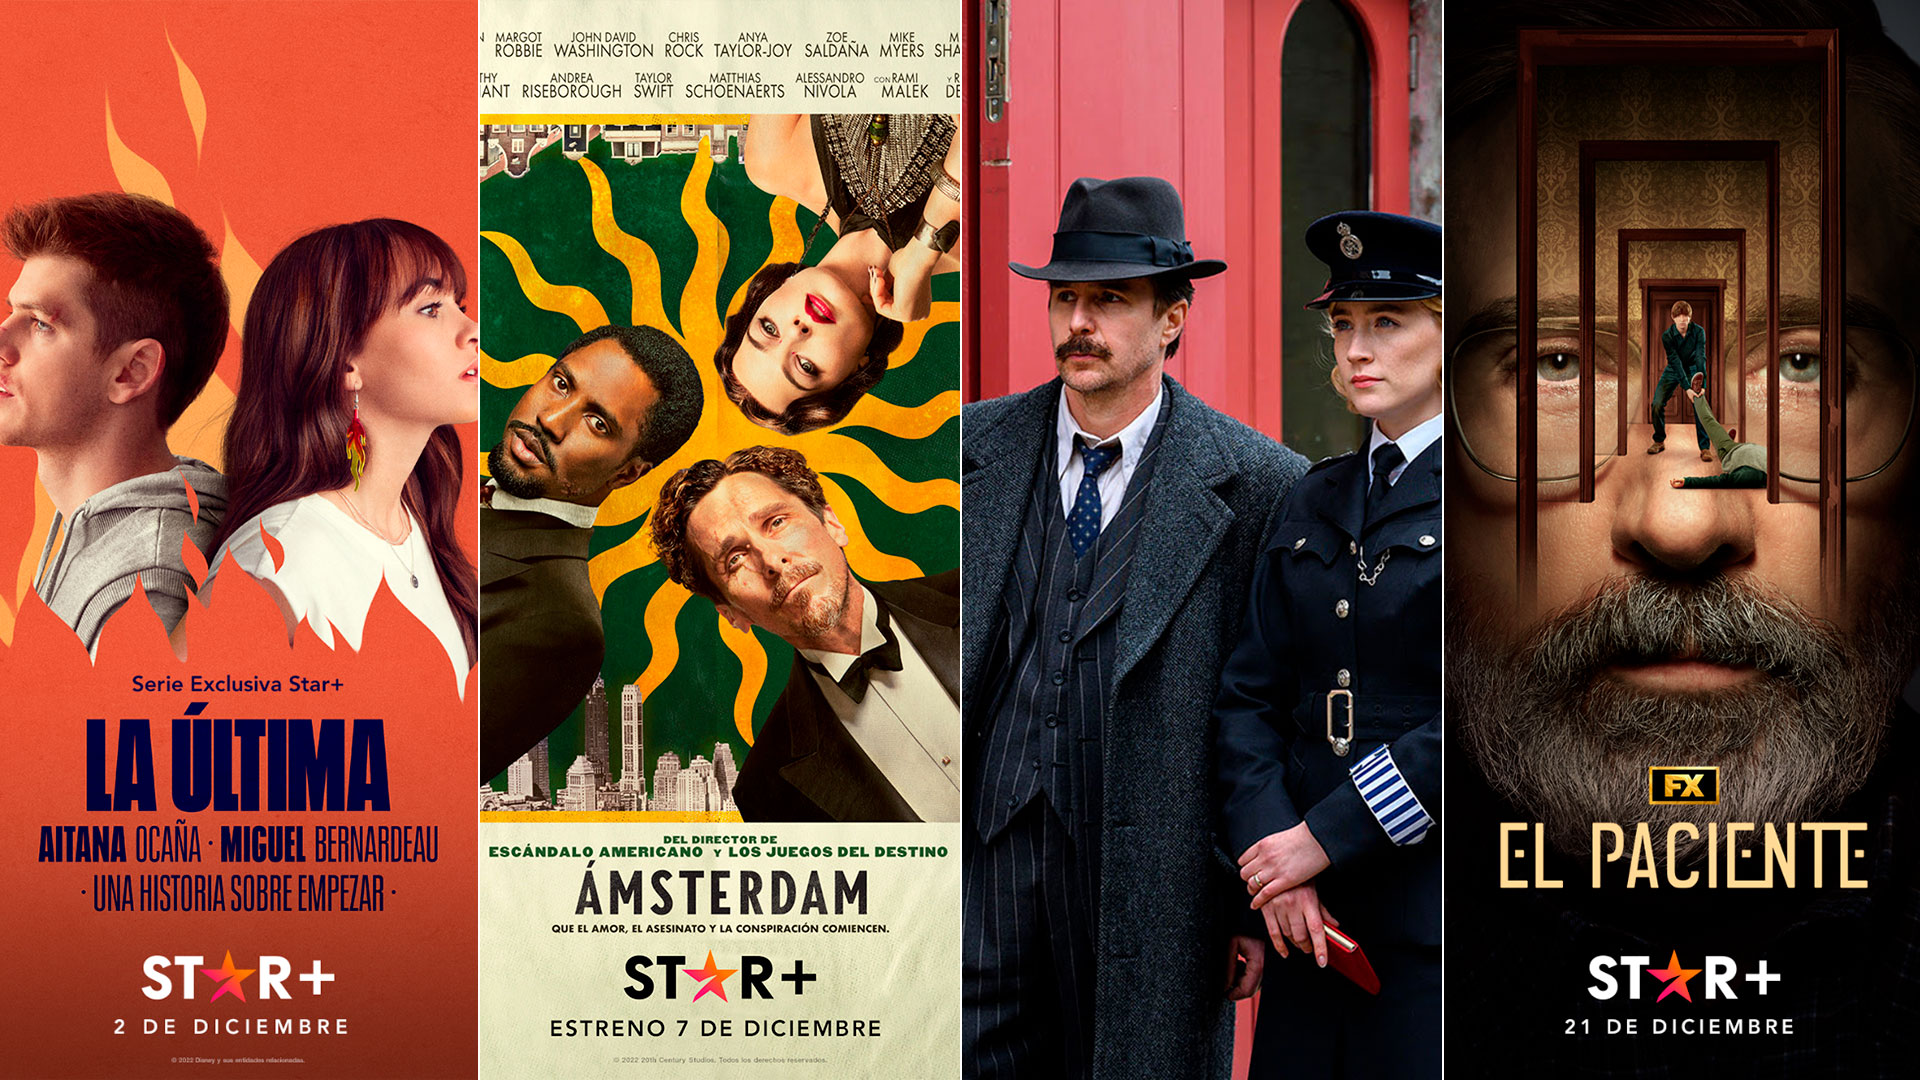 Estrenos de Star+ en diciembre: “Mira cómo corren”, “Top Gun: Maverick” y “Amsterdam” entre los más destacados